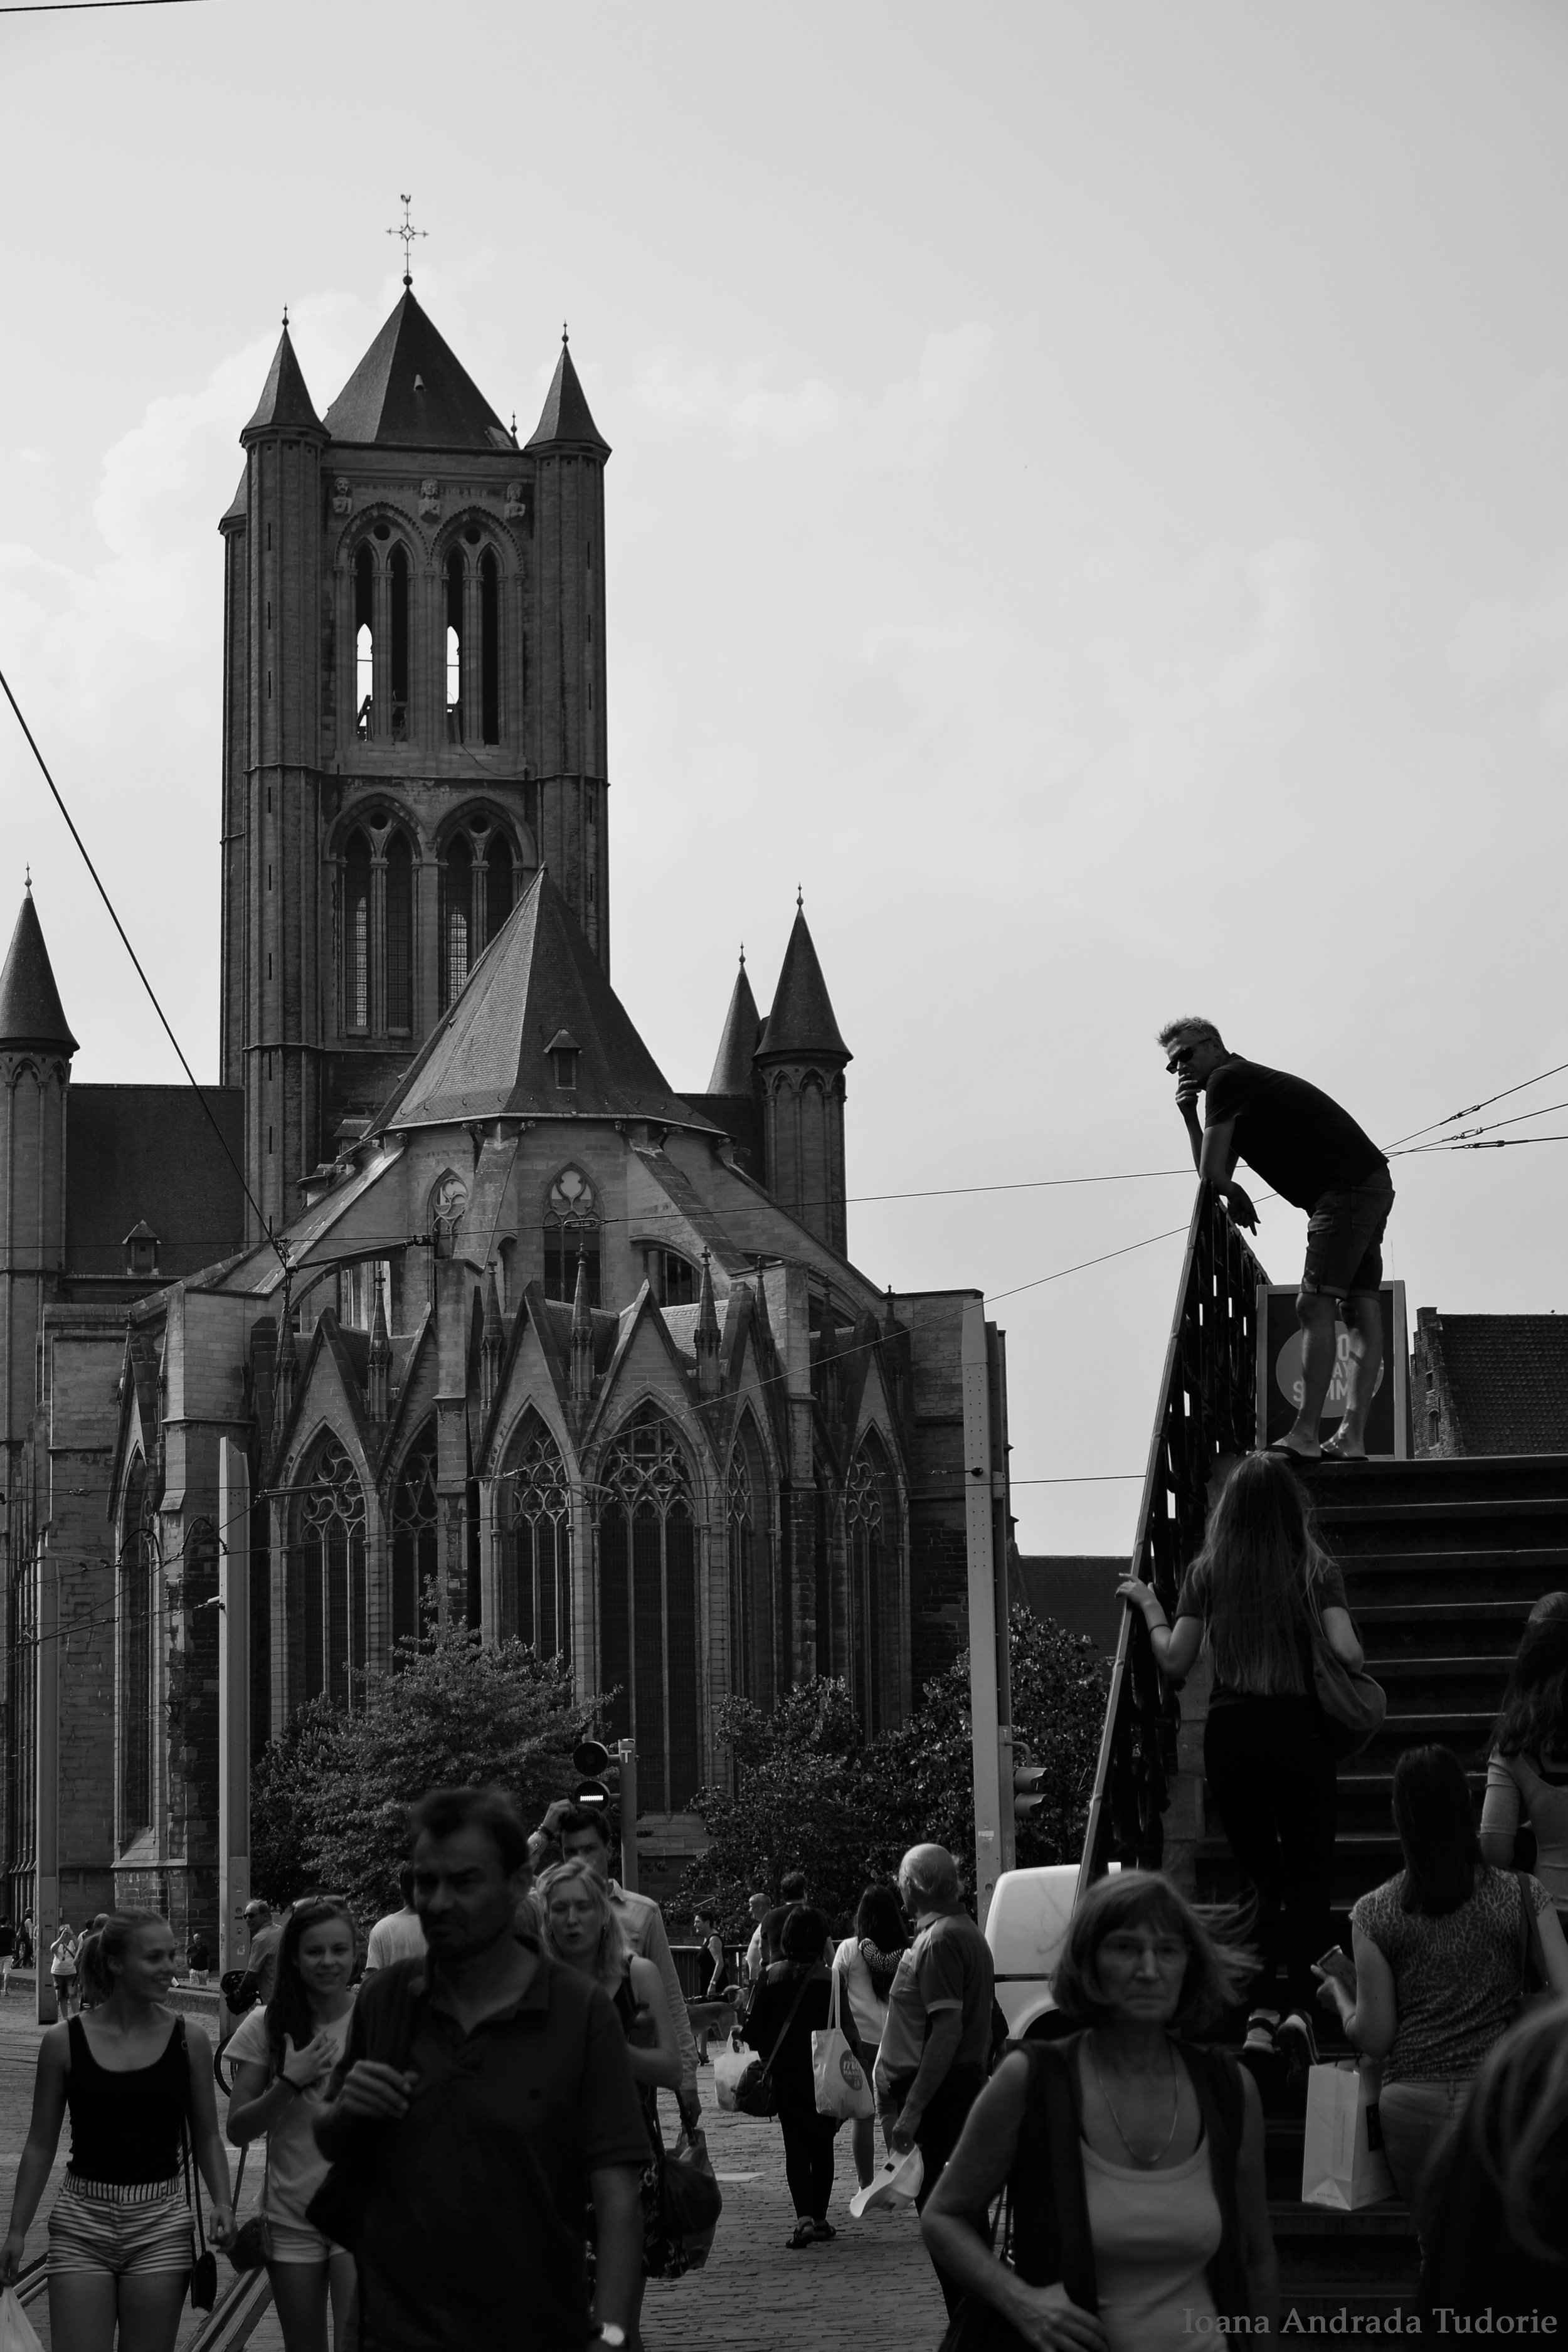 Gent, Belgium, August 2017